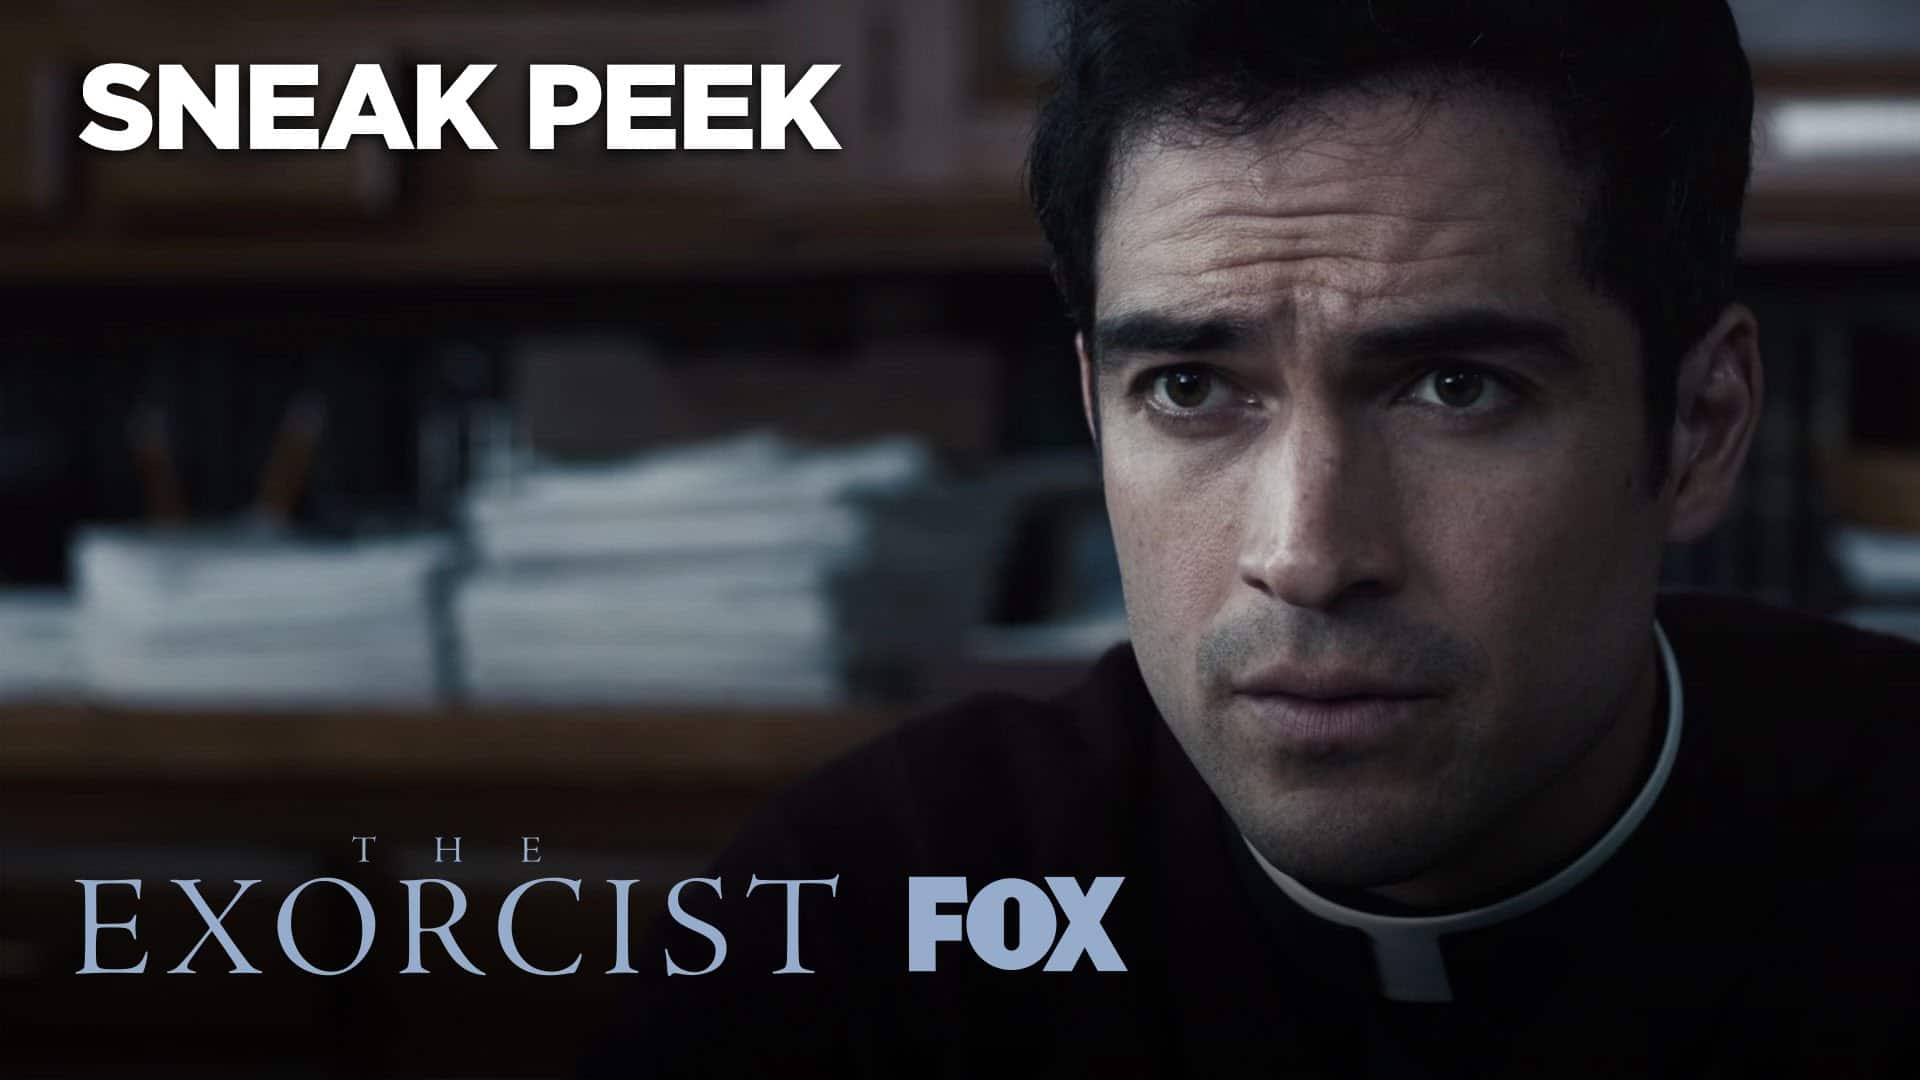 The Exorcist - To trailere for den første sesongen